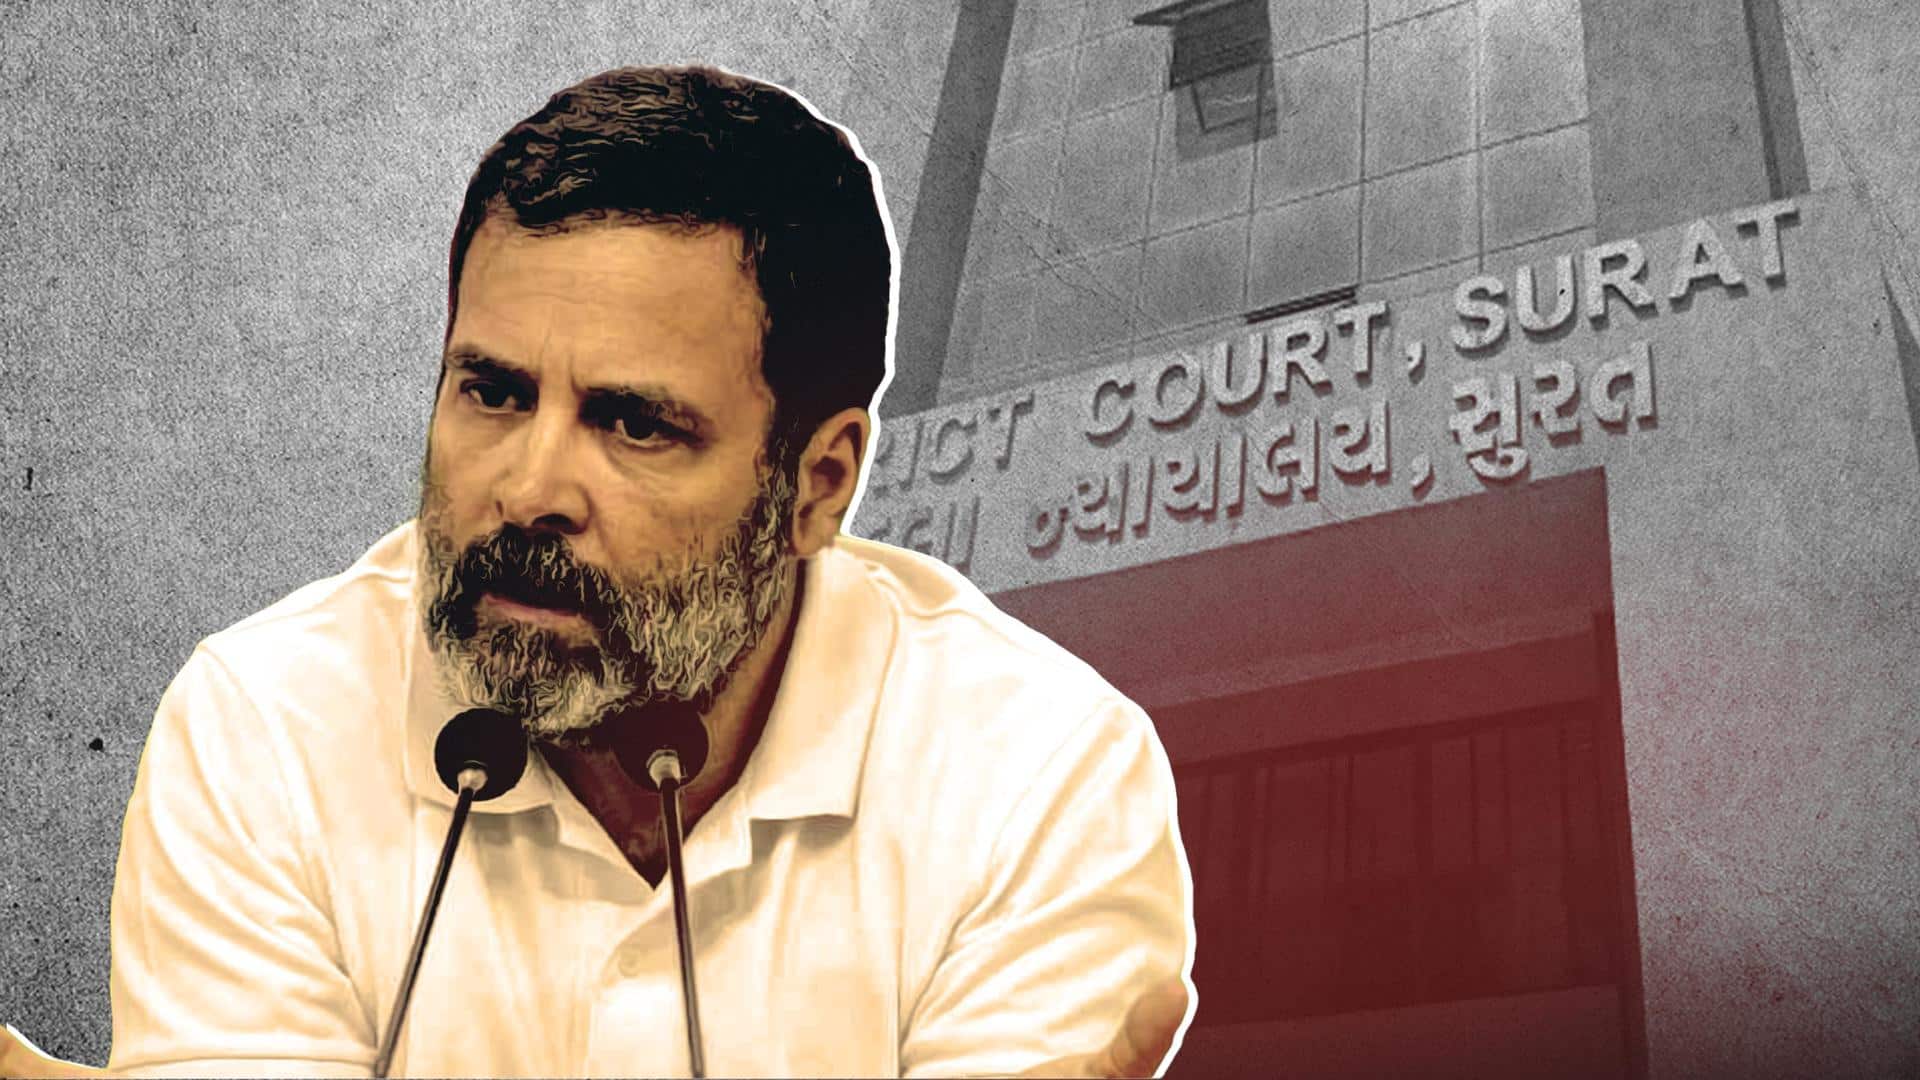 RaGa defamation: Surat court to hear plea on May 3